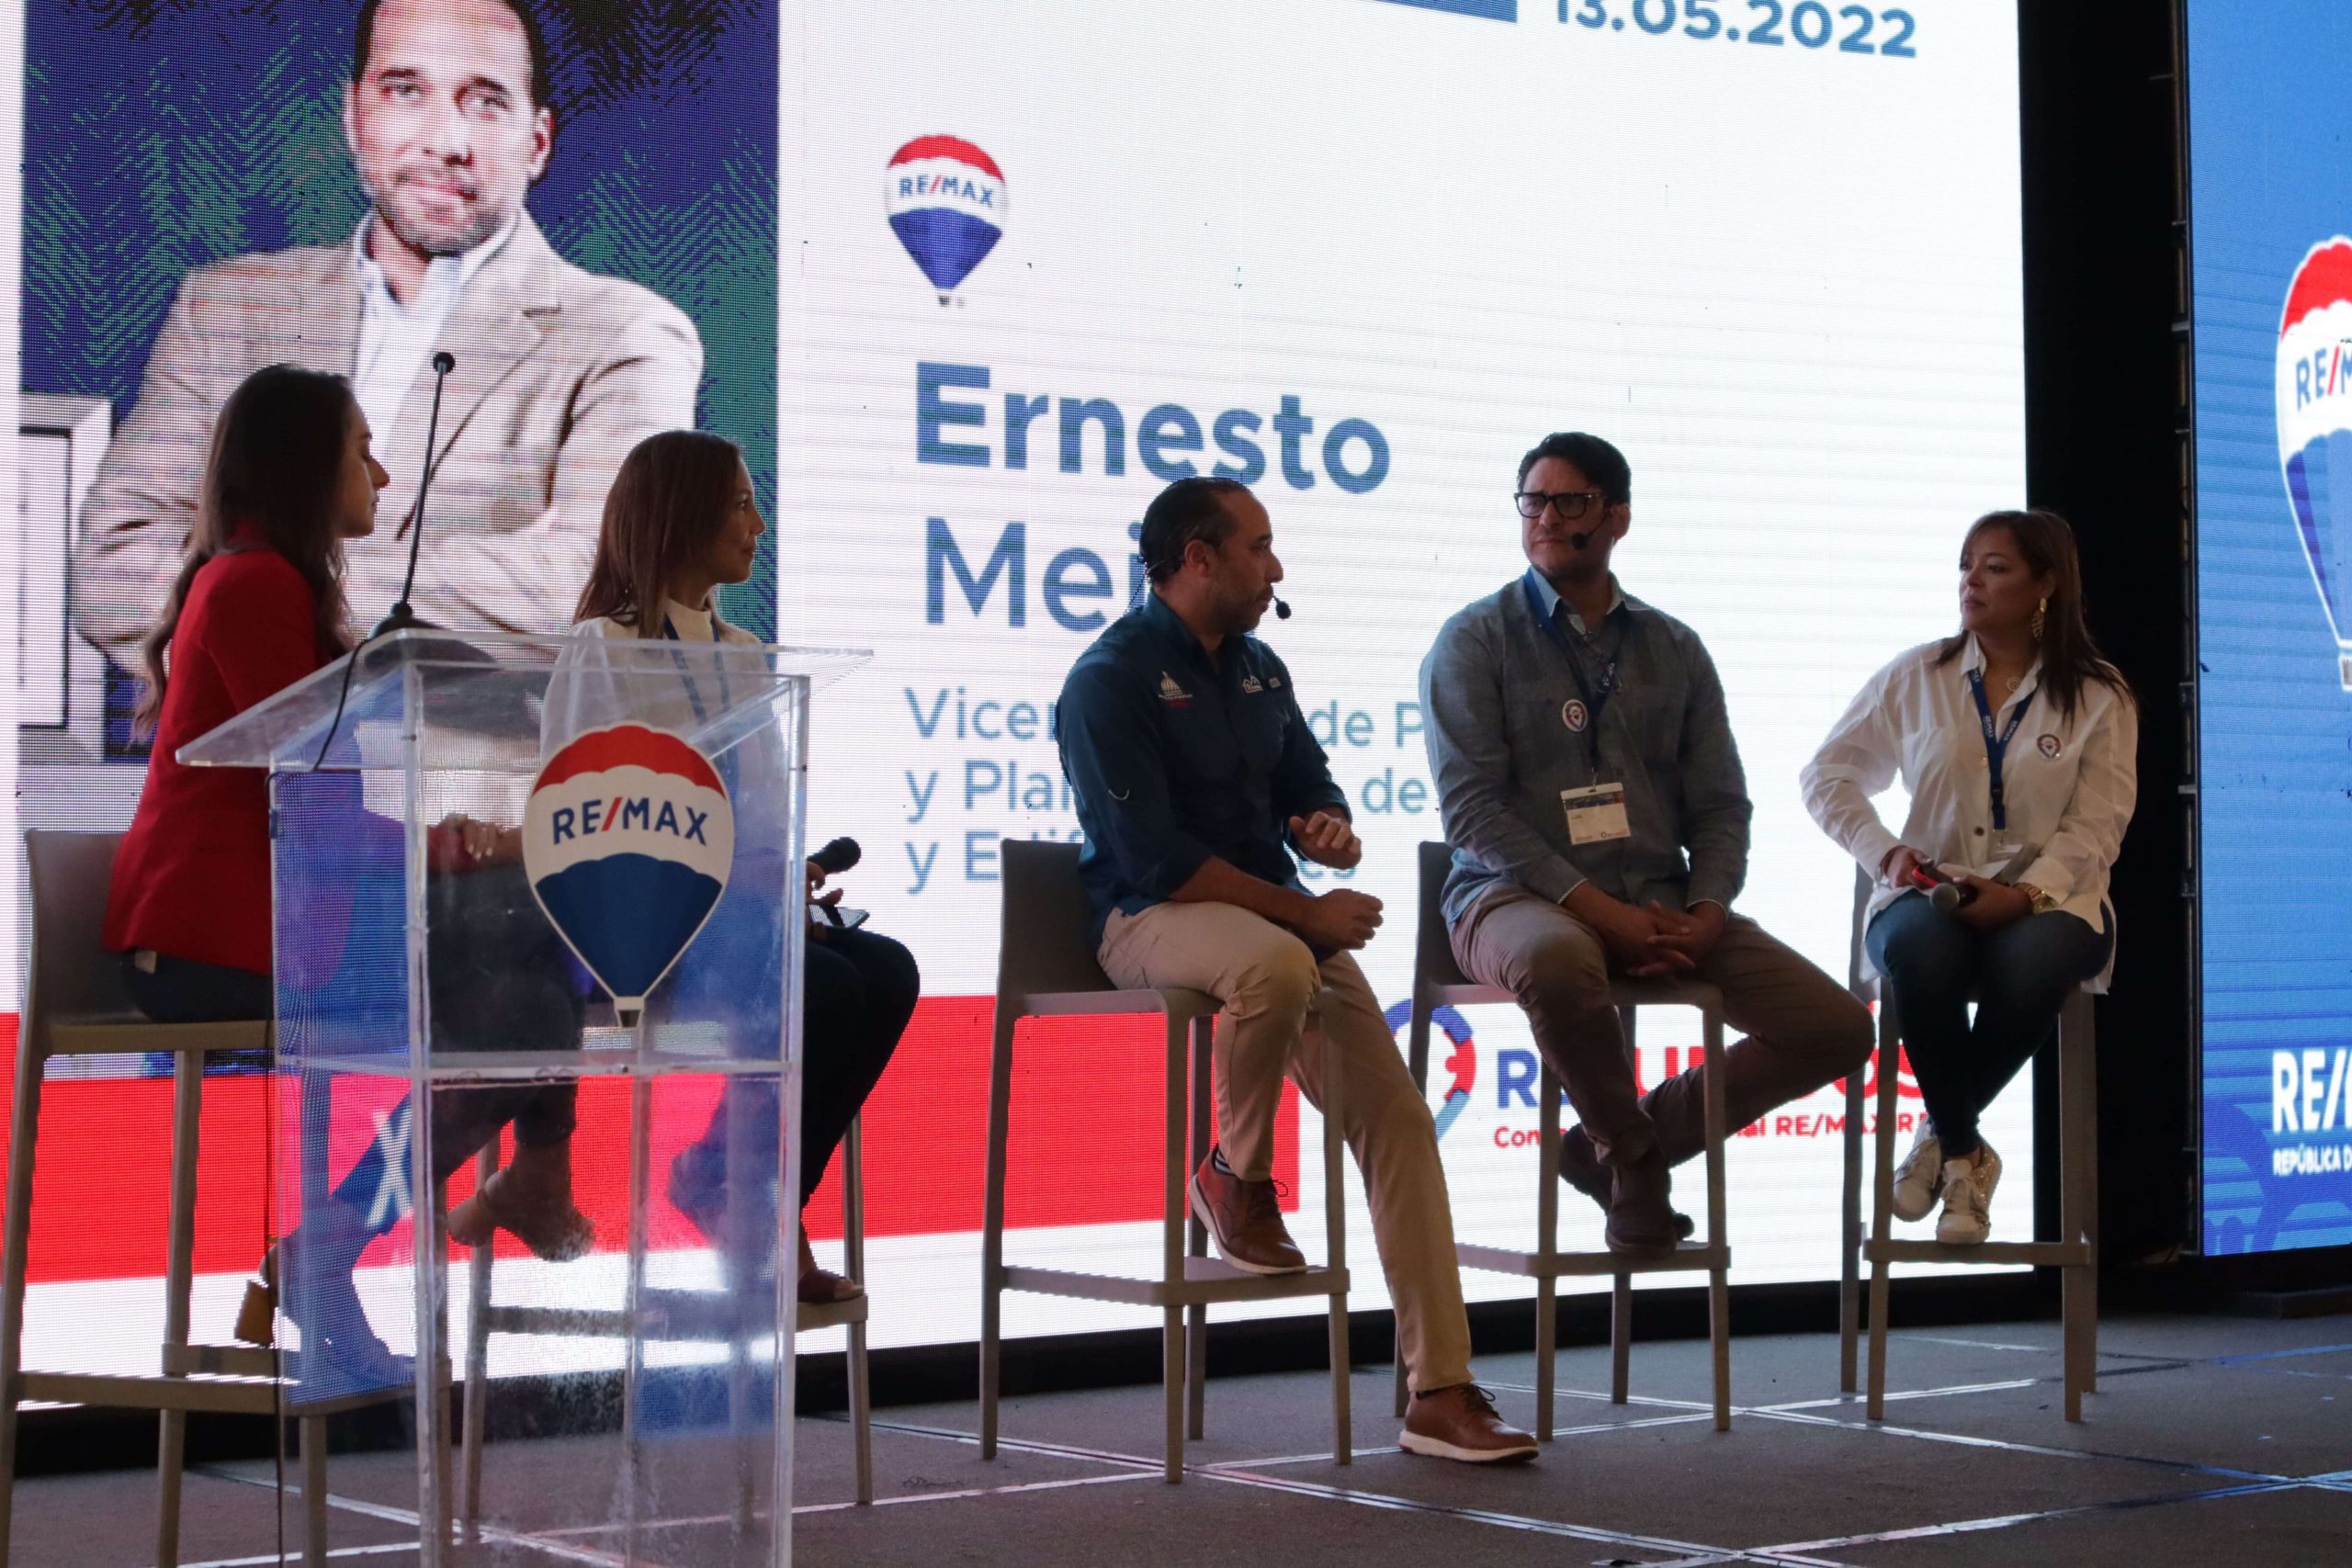 Conversatorio con Ernesto Mejía en la convención nacional de remax rd